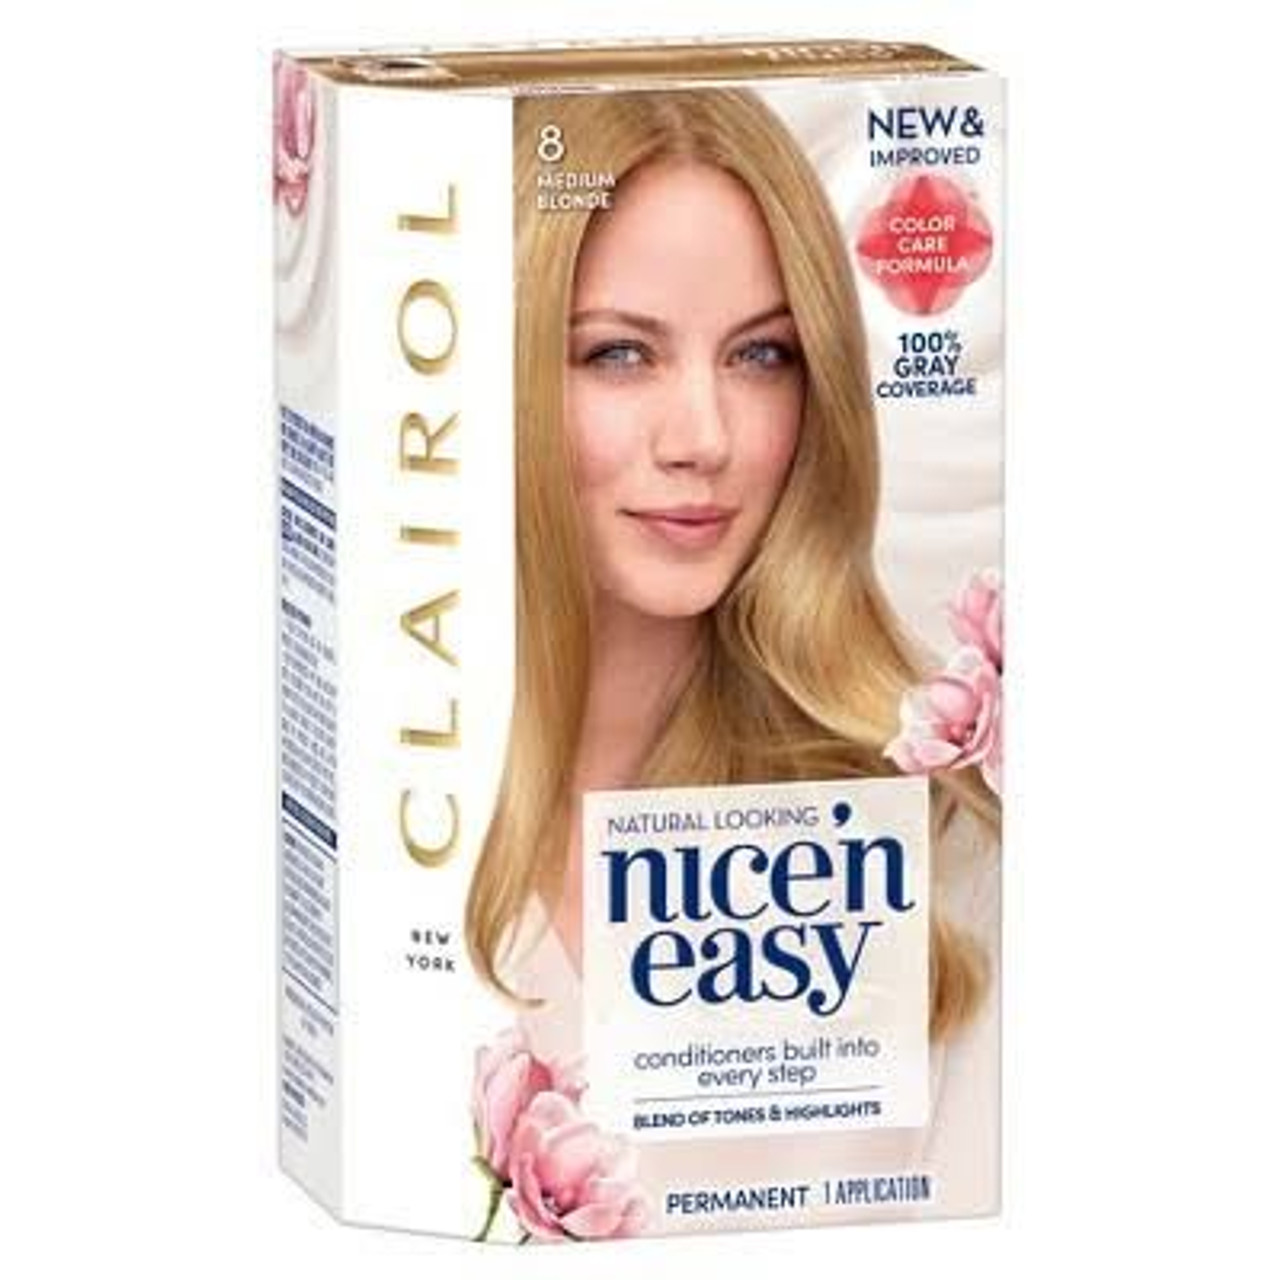 Clairol Nice 'n Easy Hair Color 8 Medium Blonde - The Online Drugstore ©